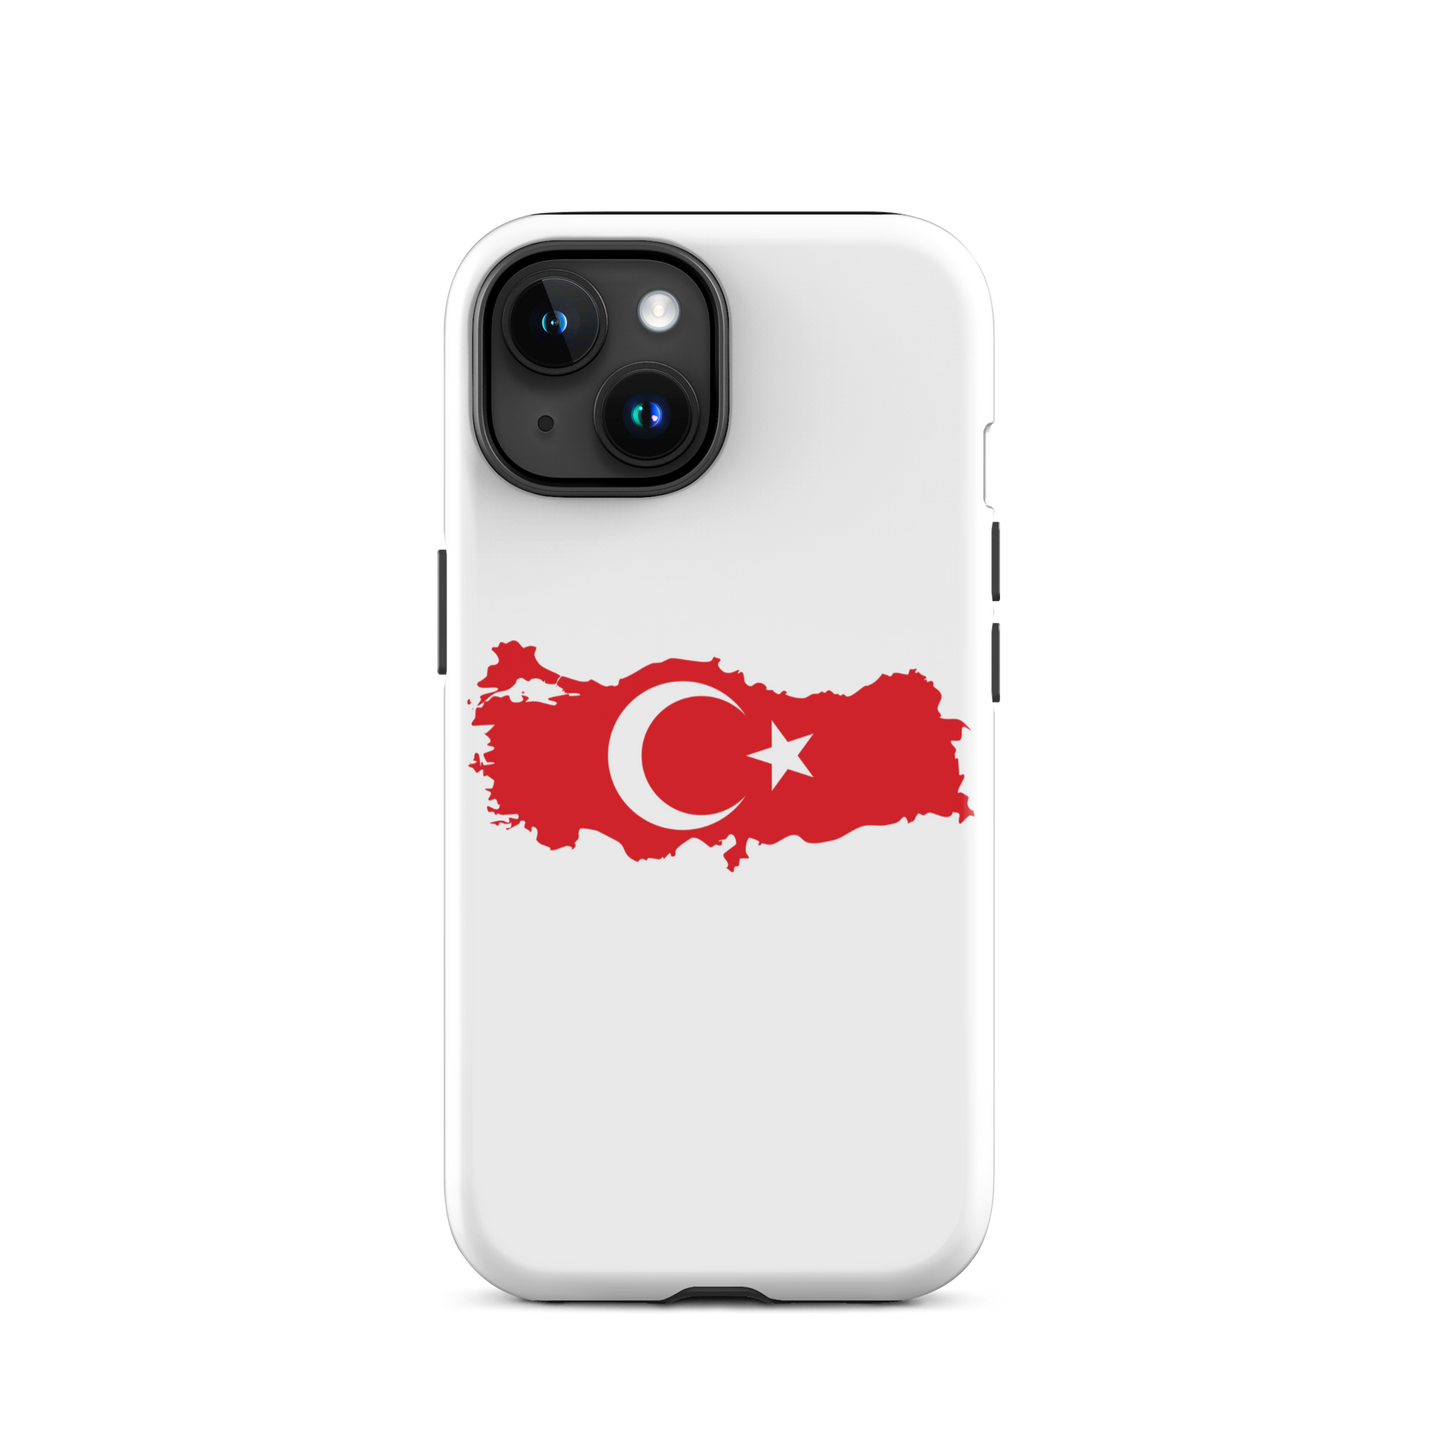 Turkey - White